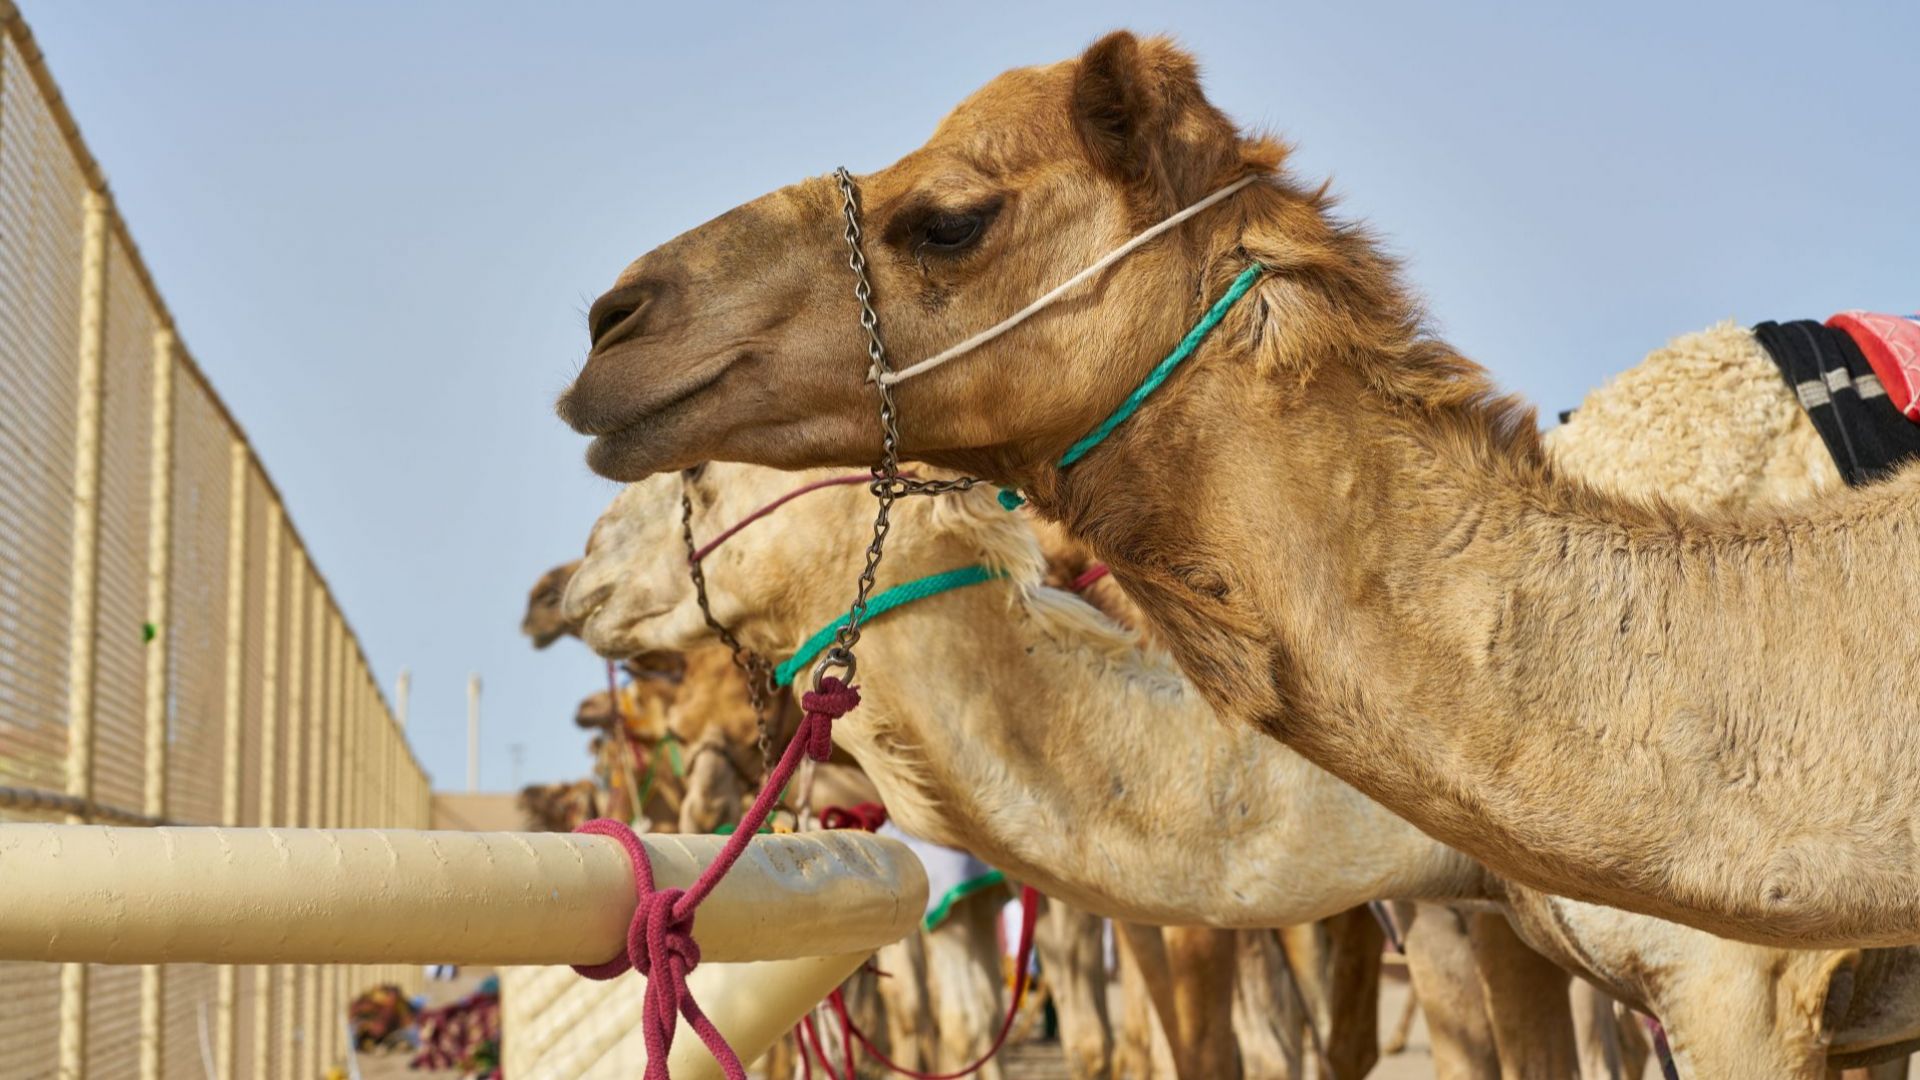 40 камили бяха дисквалифицирани от конкурс за красота заради ботокс в устните и носовете